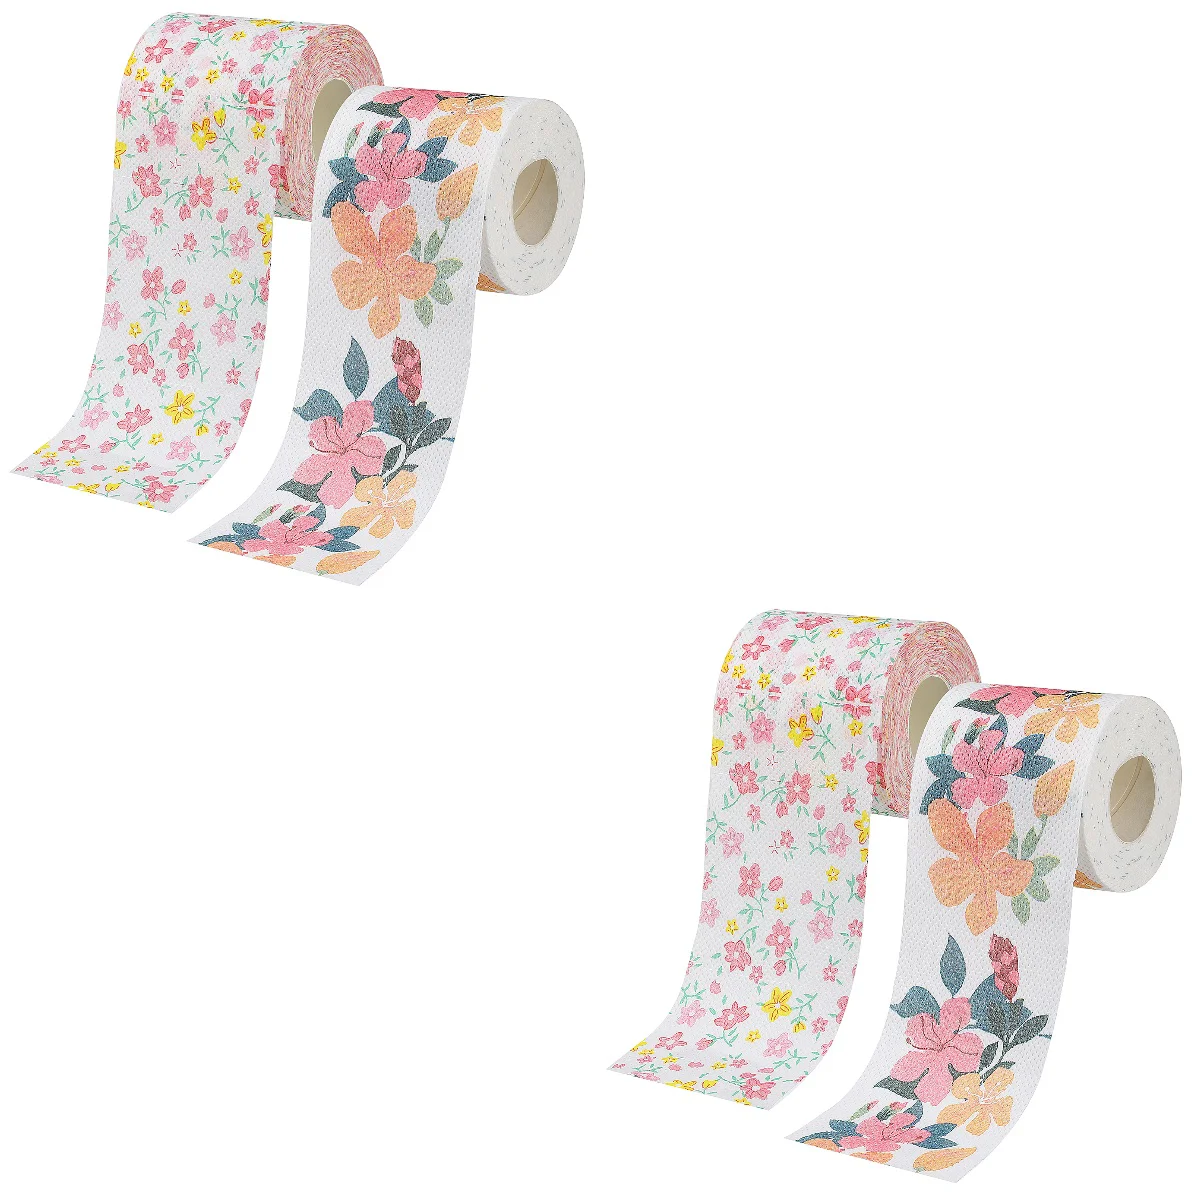 

4 рулона туалетной бумаги с цветочным принтом, декоративные салфетки для туалета с цветочным узором для дома, офиса, путешествий